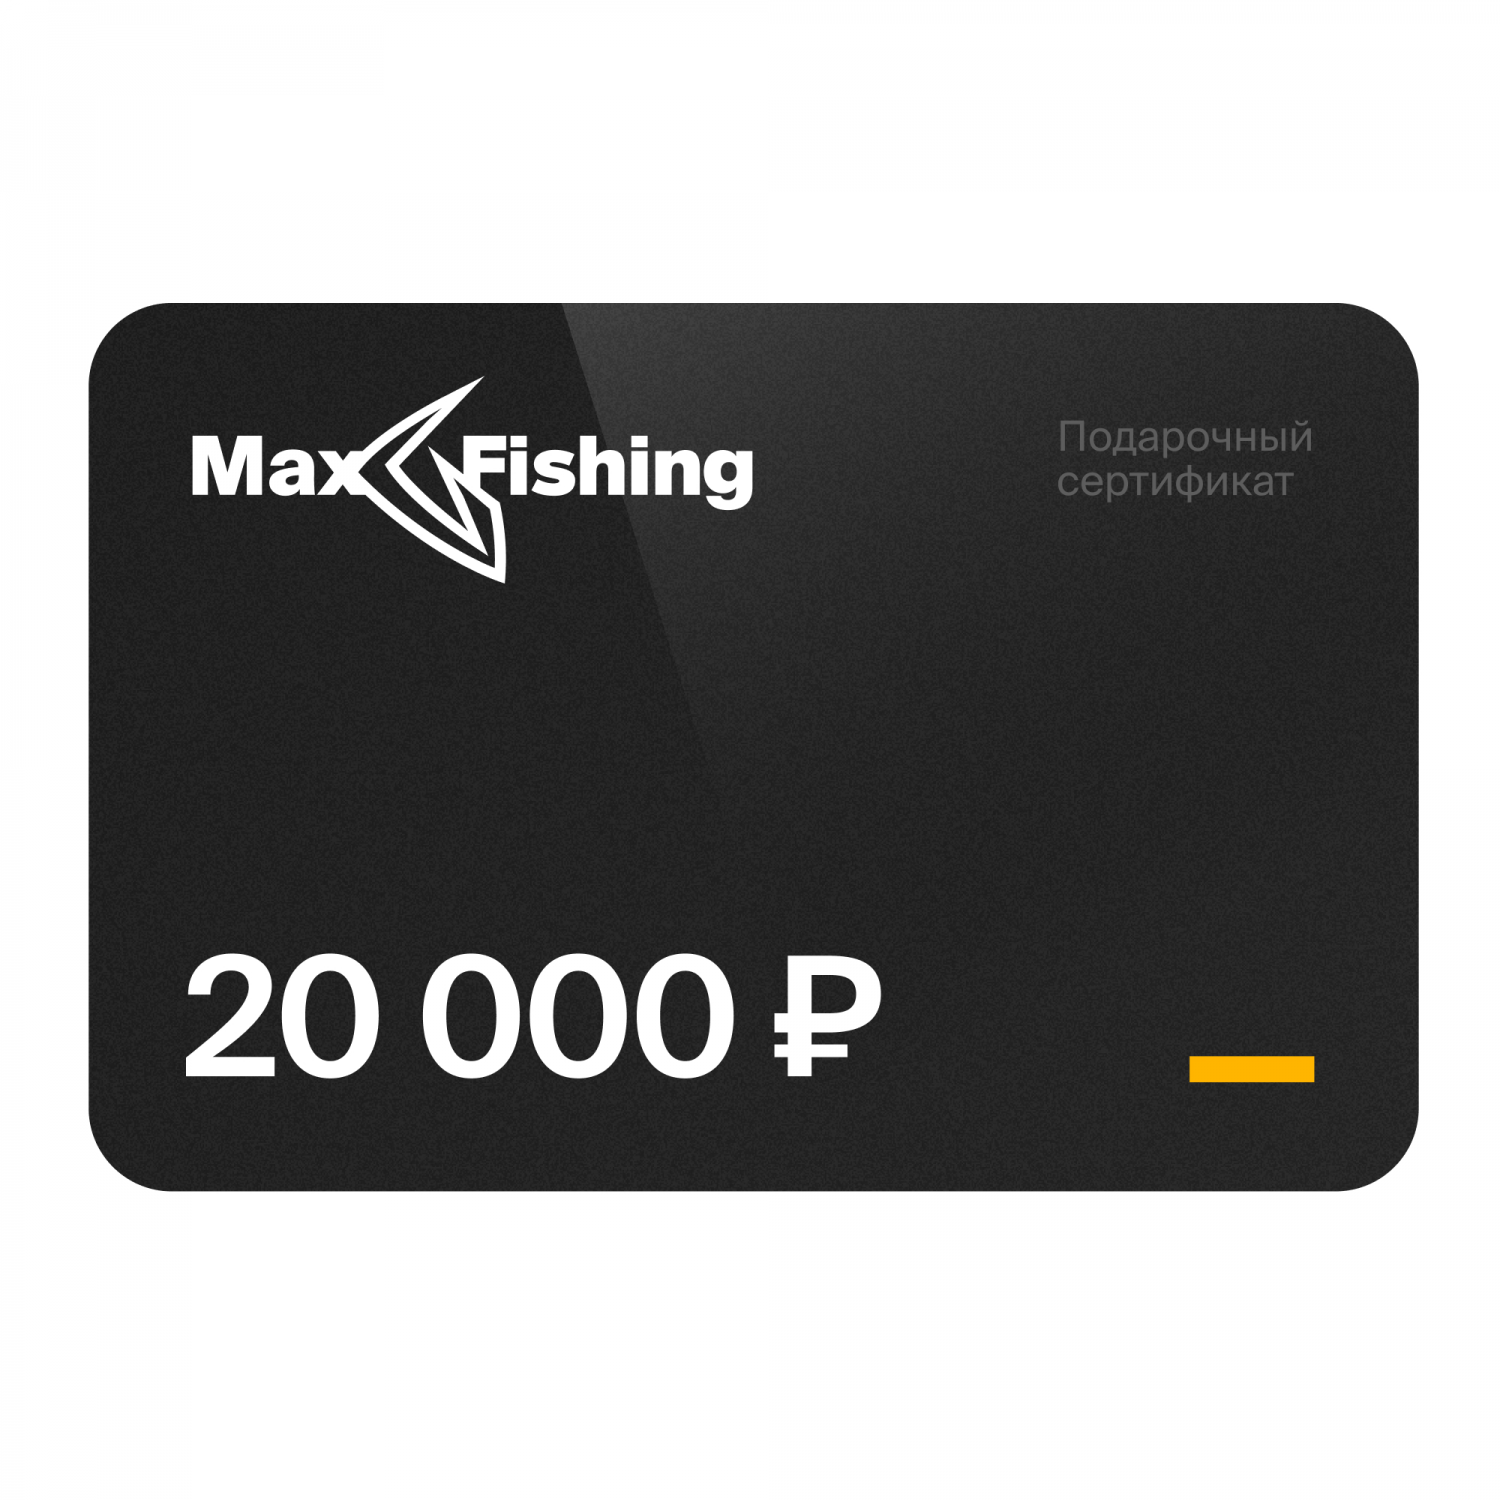 Подарочный сертификат MaxFishing 20 000 ₽ подарочный сертификат maxfishing 100